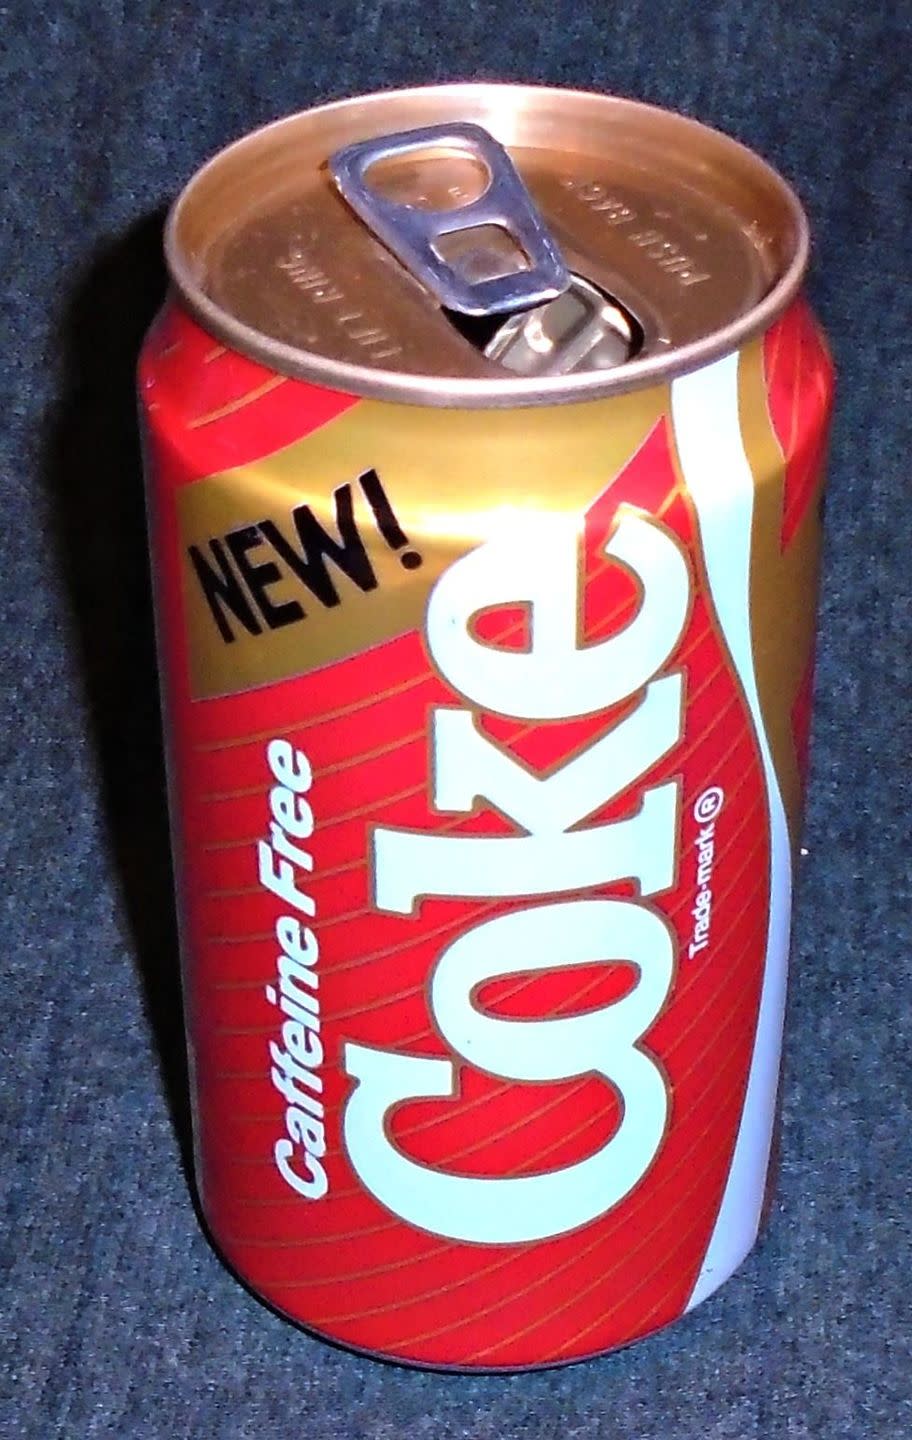 1985-1986: New Coke